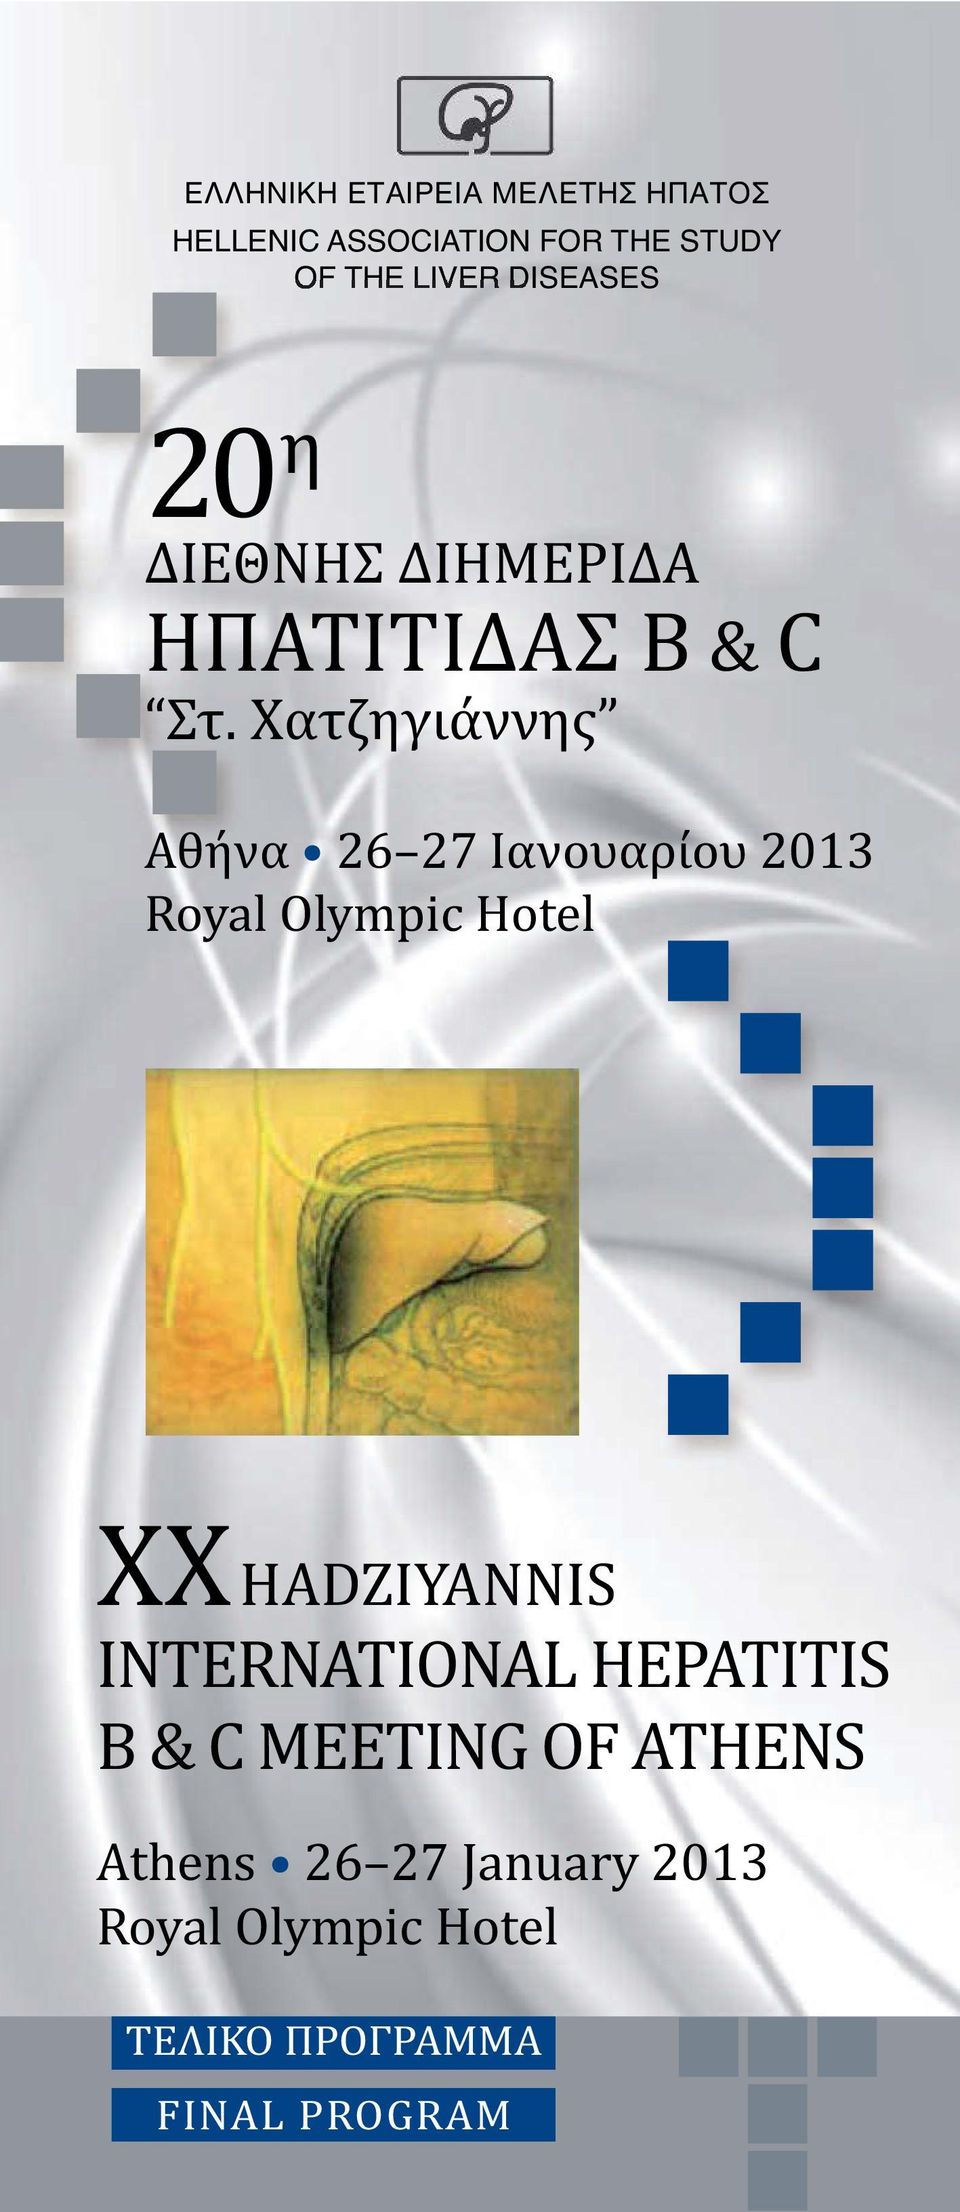 Χατζηγιάννης Αθήνα 26 27 Ιανουαρίου 2013 Royal Olympic Hotel ) XX HADZIYANNIS